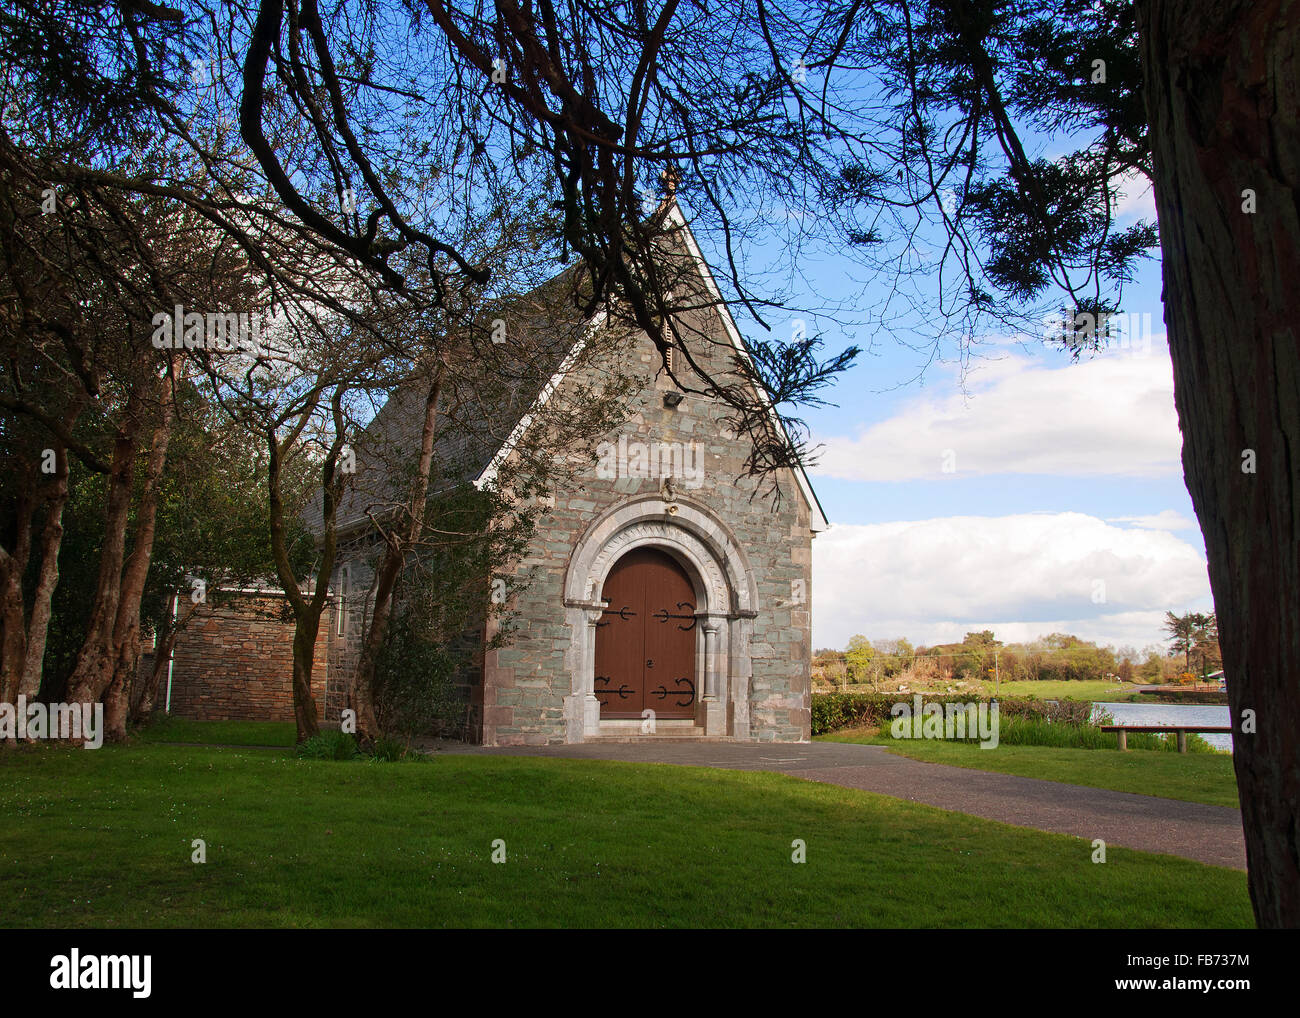 Il piccolo San Finbarrs oratorio sulla riva di Gougane Barra Lago, West Cork, Irlanda, raffigurato in una bella giornata con copia spazio. Foto Stock